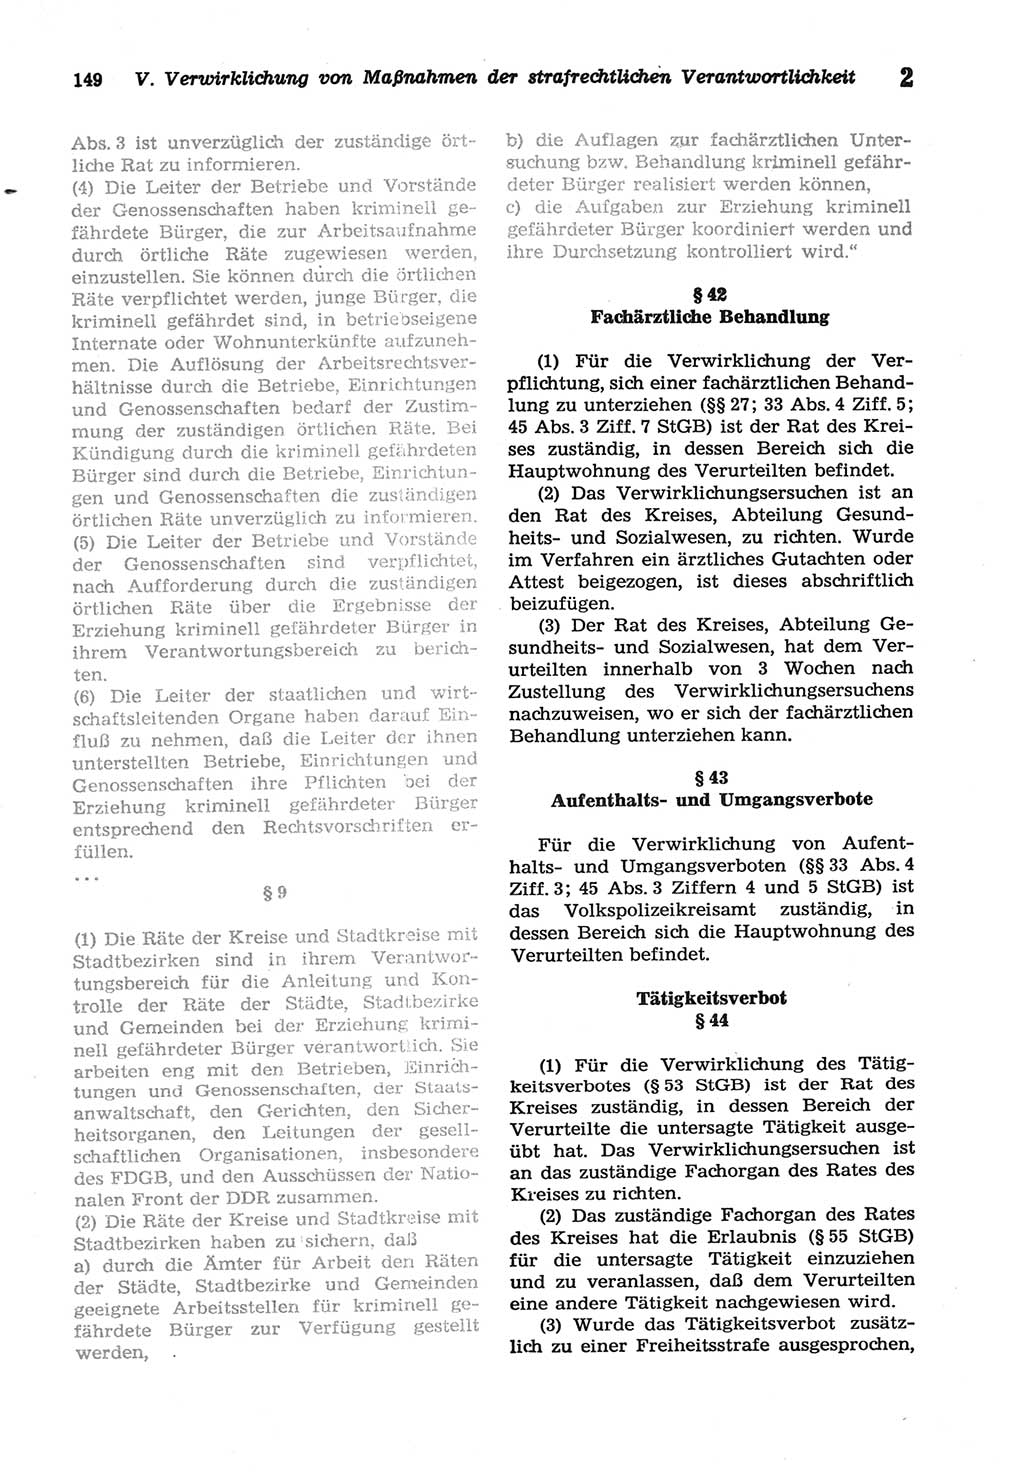 Strafprozeßordnung (StPO) der Deutschen Demokratischen Republik (DDR) sowie angrenzende Gesetze und Bestimmungen 1977, Seite 149 (StPO DDR Ges. Best. 1977, S. 149)